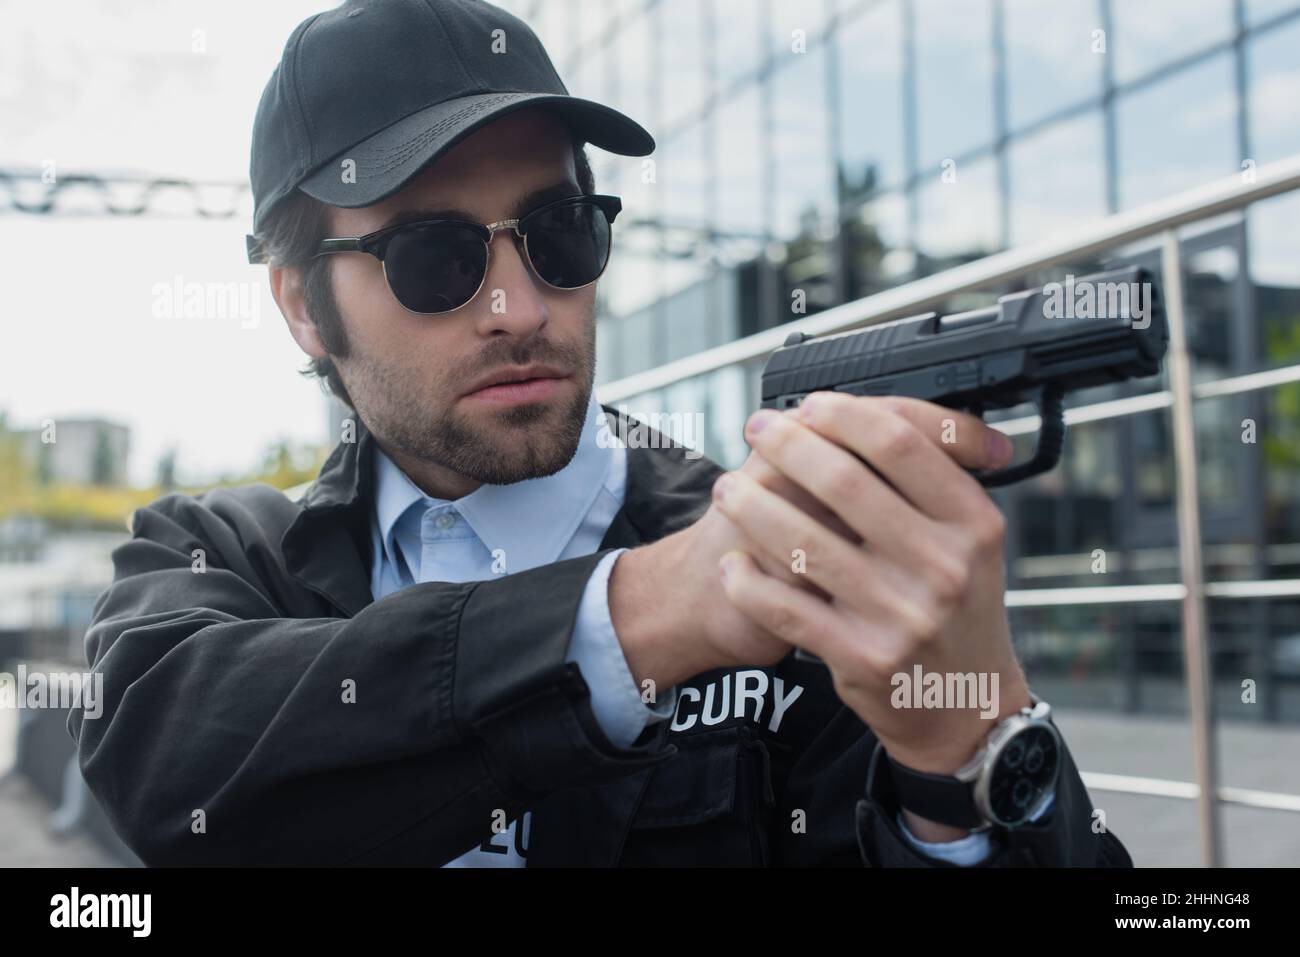 guardia giovane in uniforme e occhiali da sole che reggono la pistola all'aperto Foto Stock